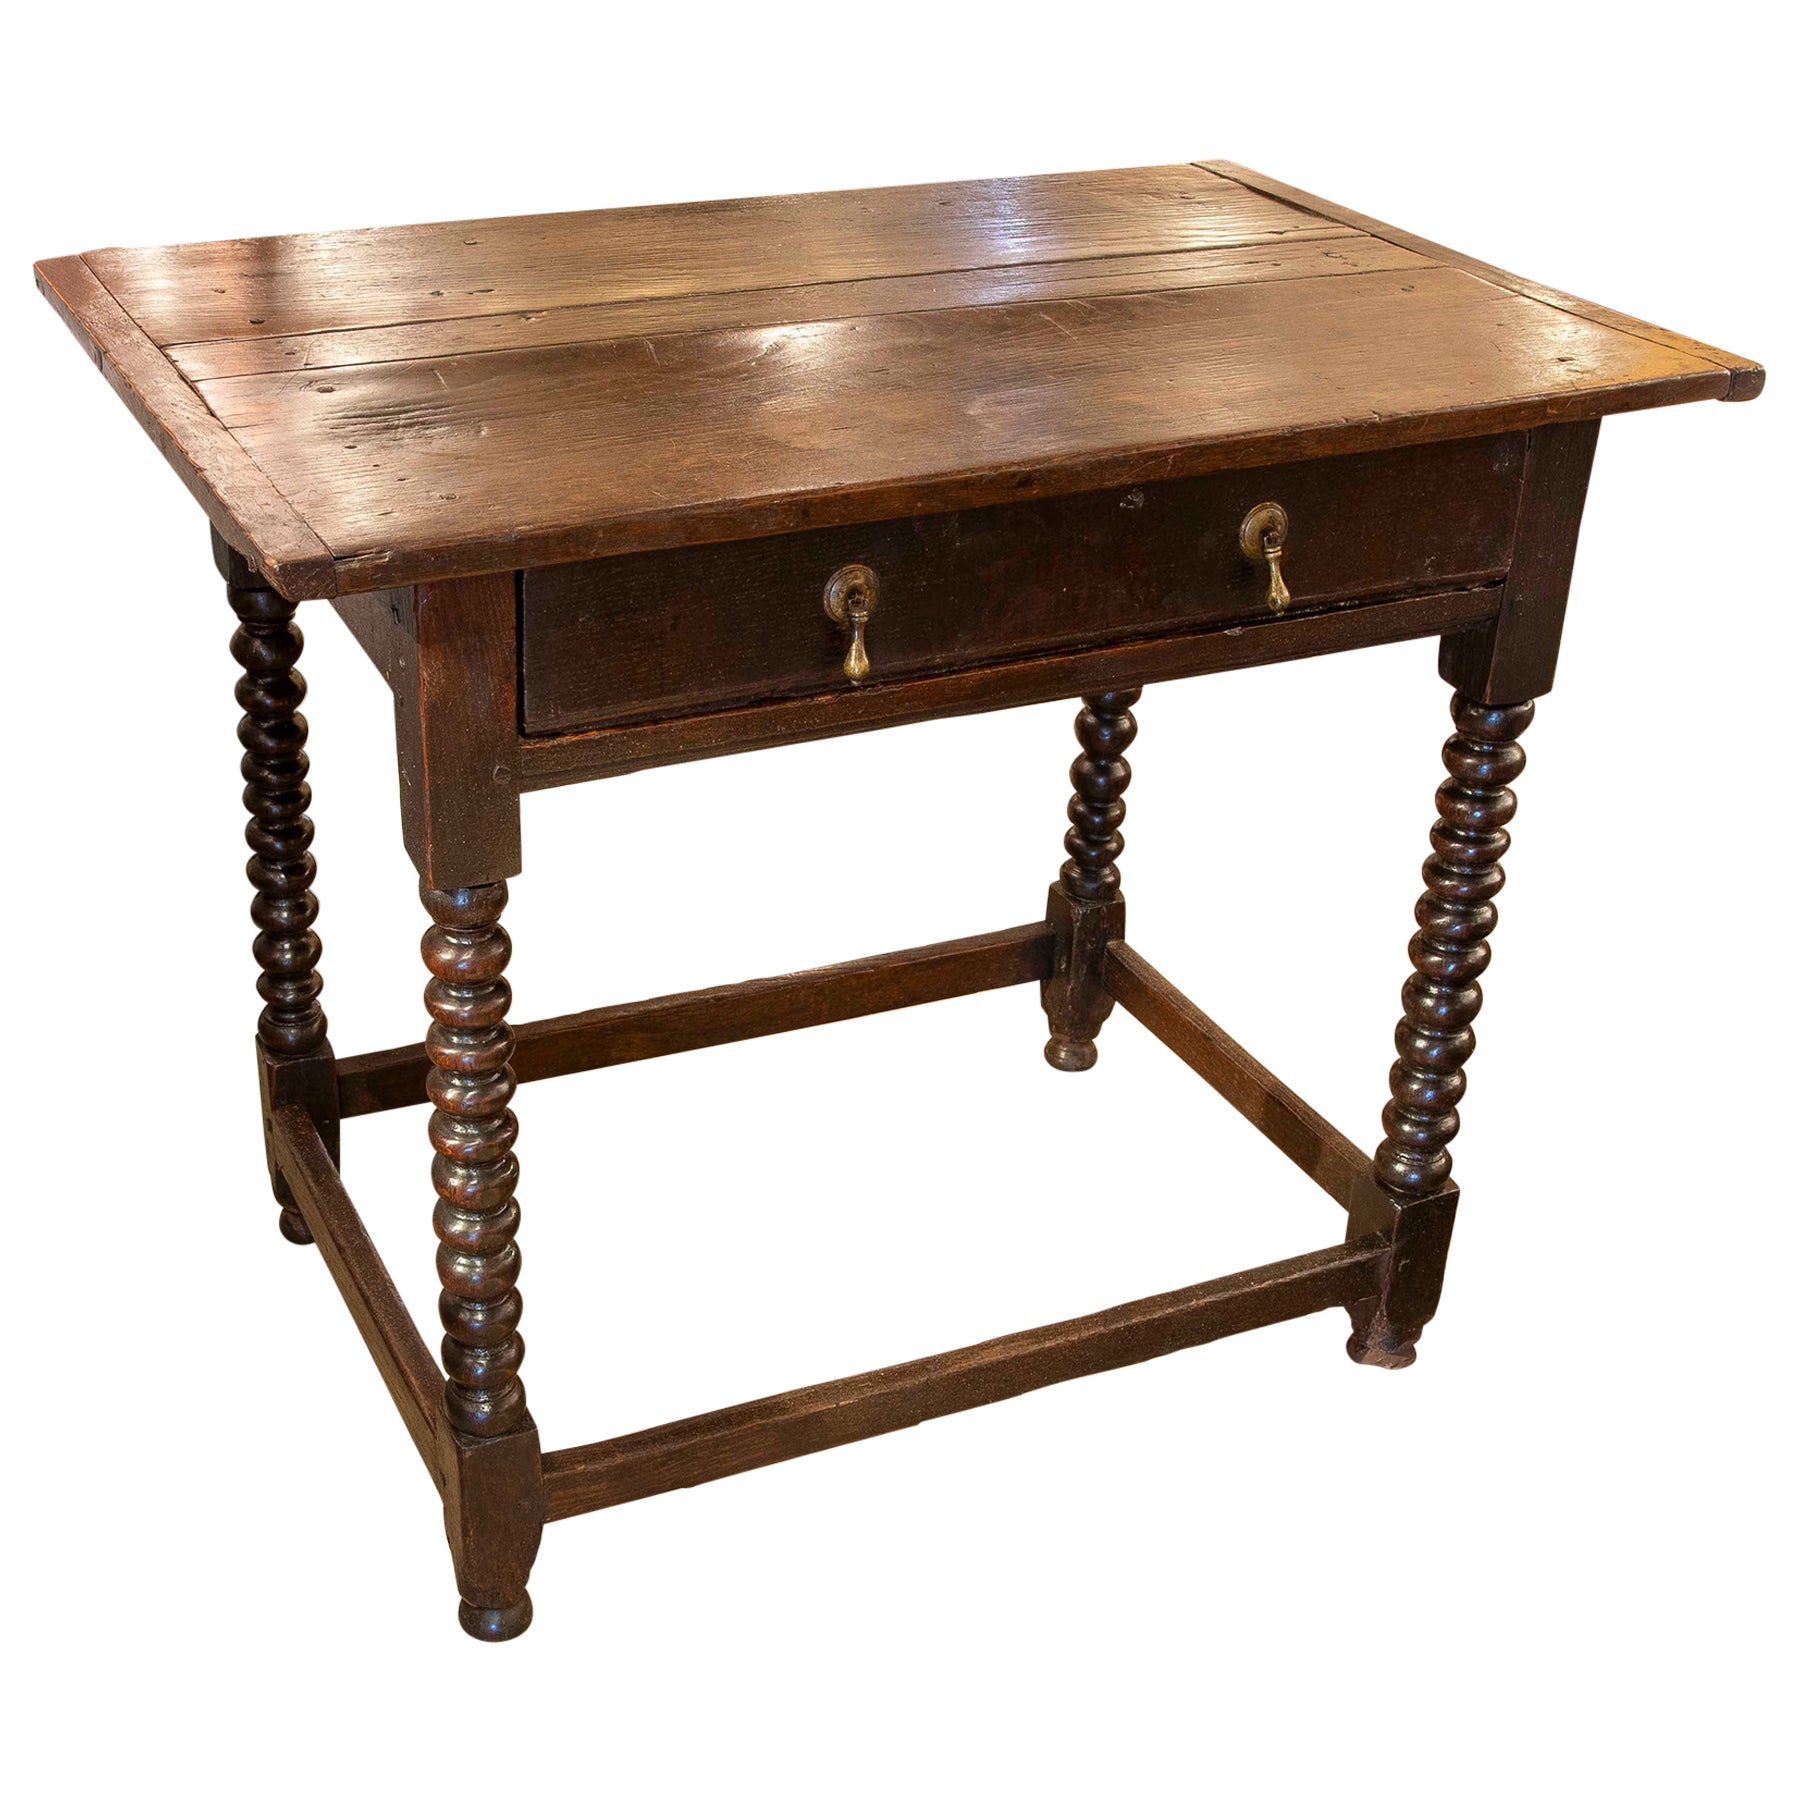 Spanischer Holztisch des 19. Jahrhunderts mit Schublade und gedrechselten Beinen